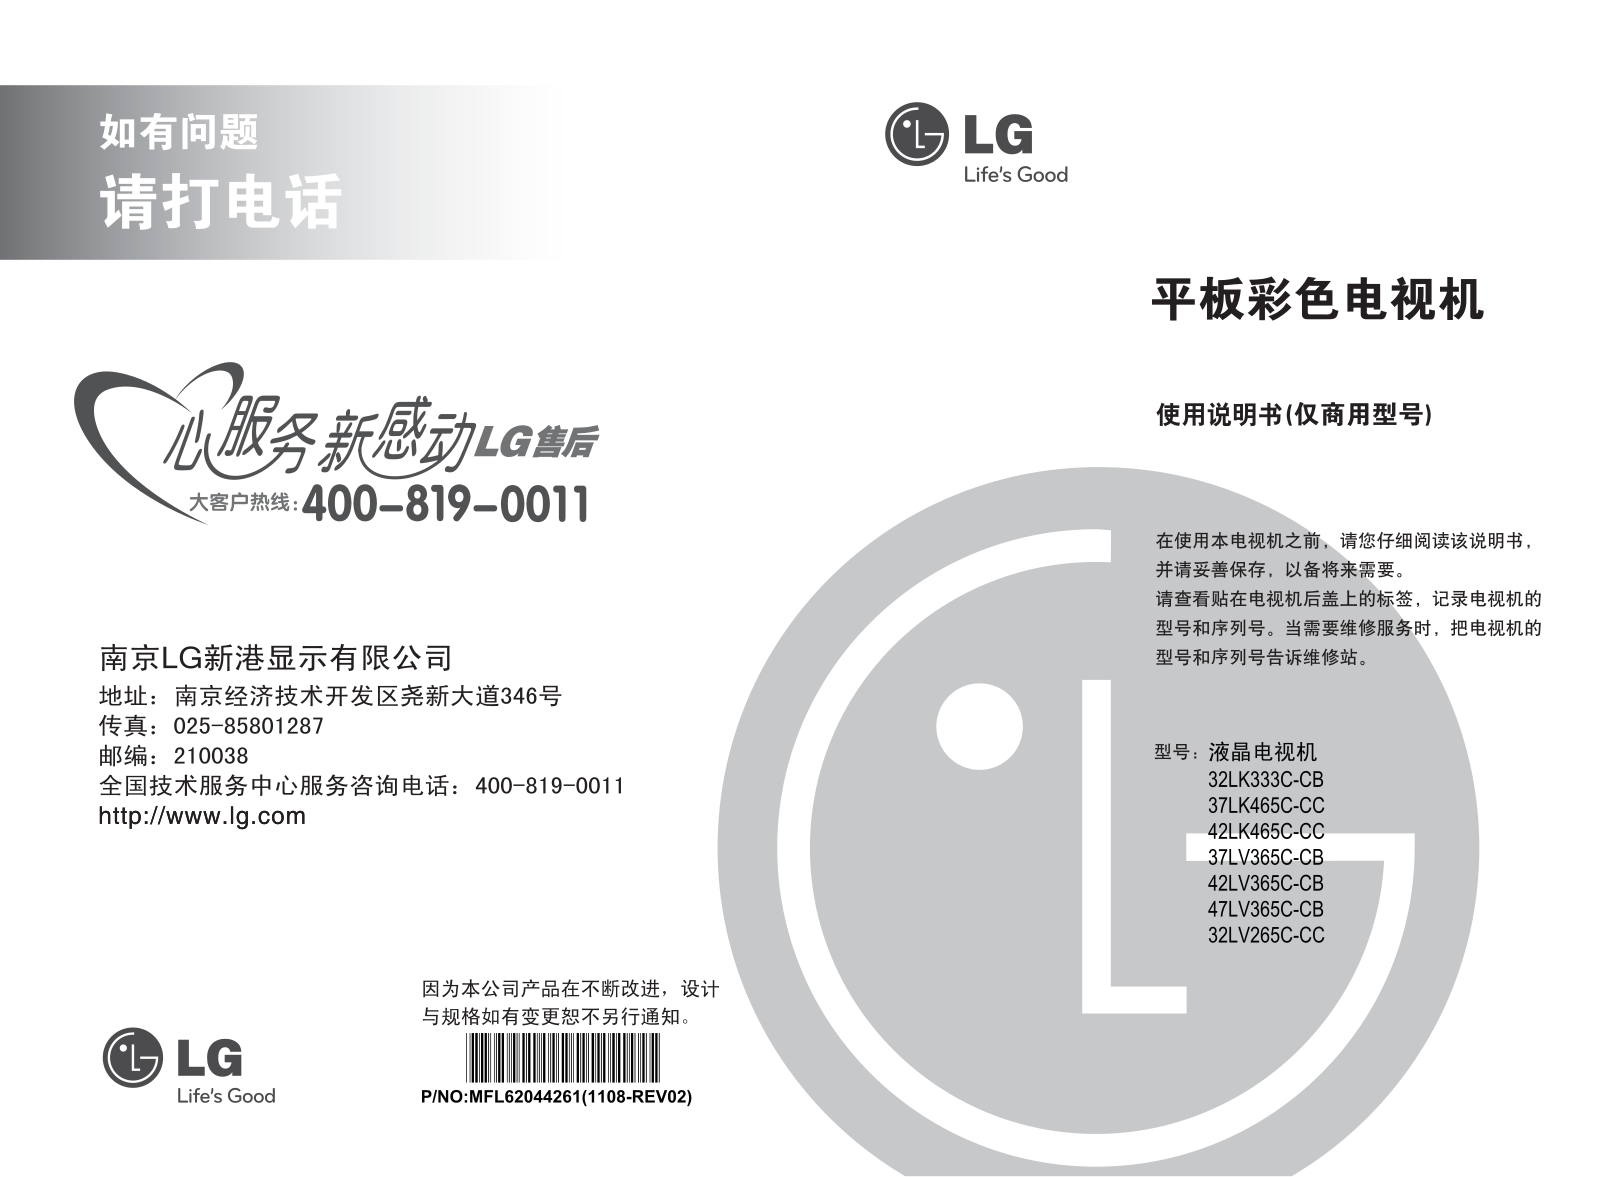 LG 32LV265C, 32LK333C, 37LV365C, 37LK465C, 42LV365C Product Manual